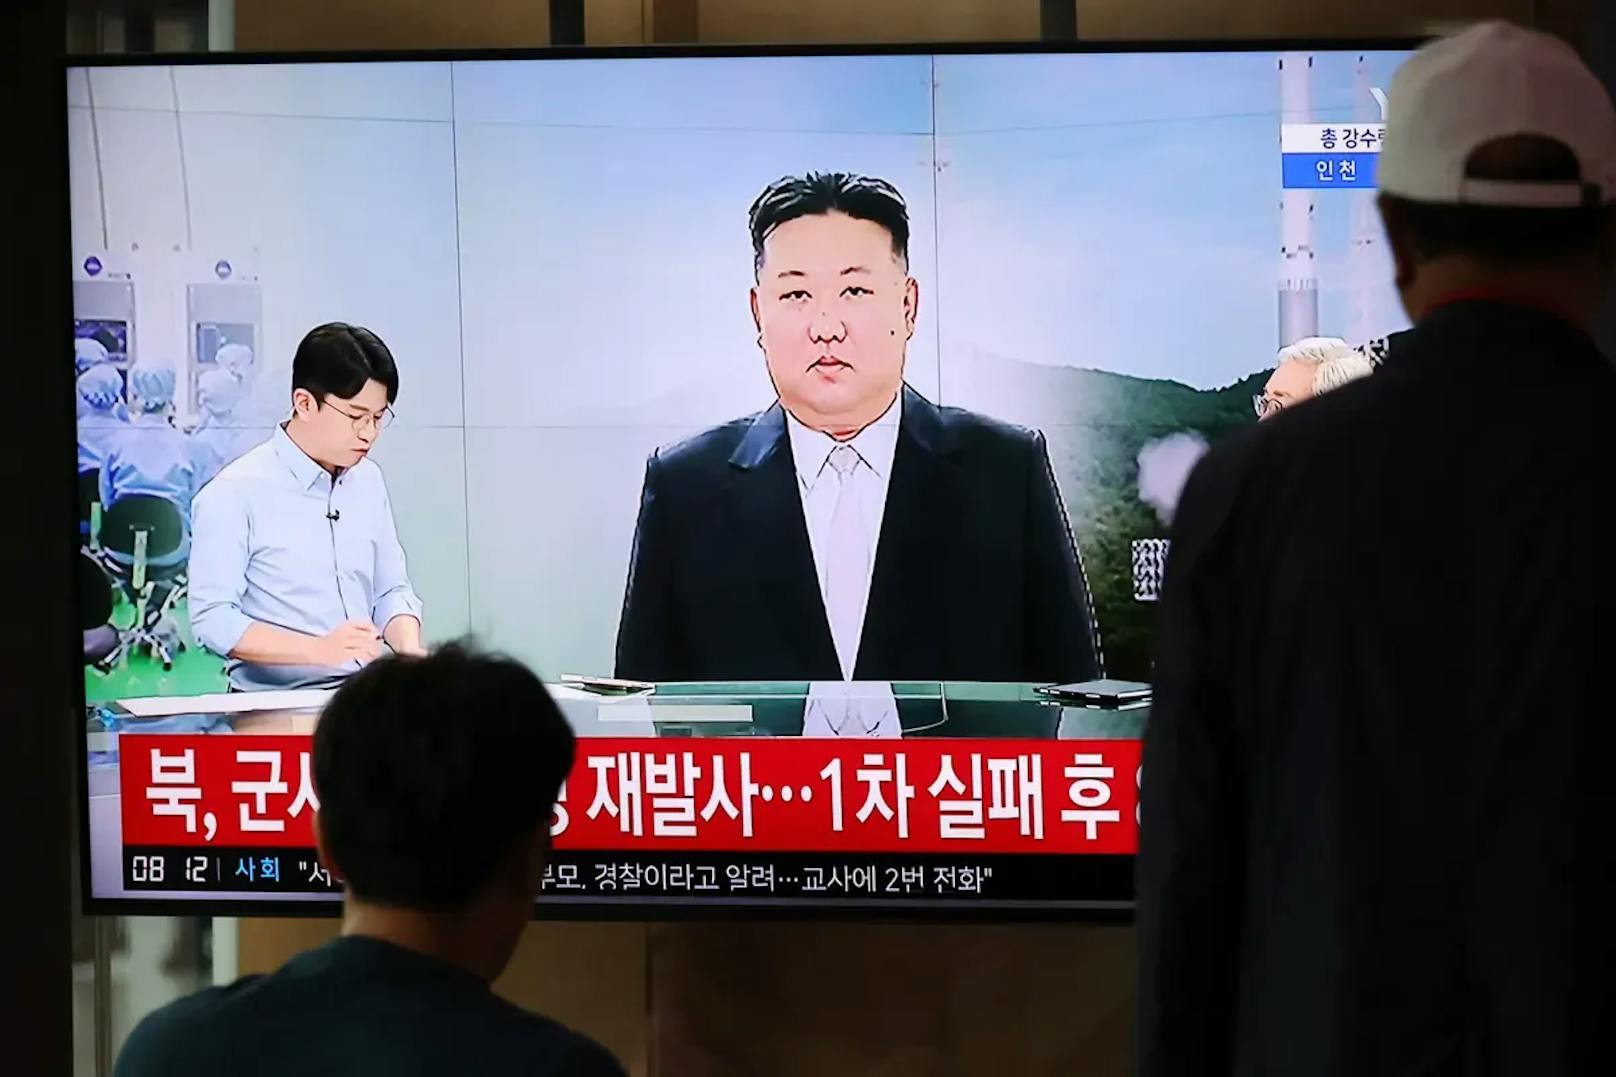 Nordkorea: Rakete mit Spionagesatellit abgestürzt